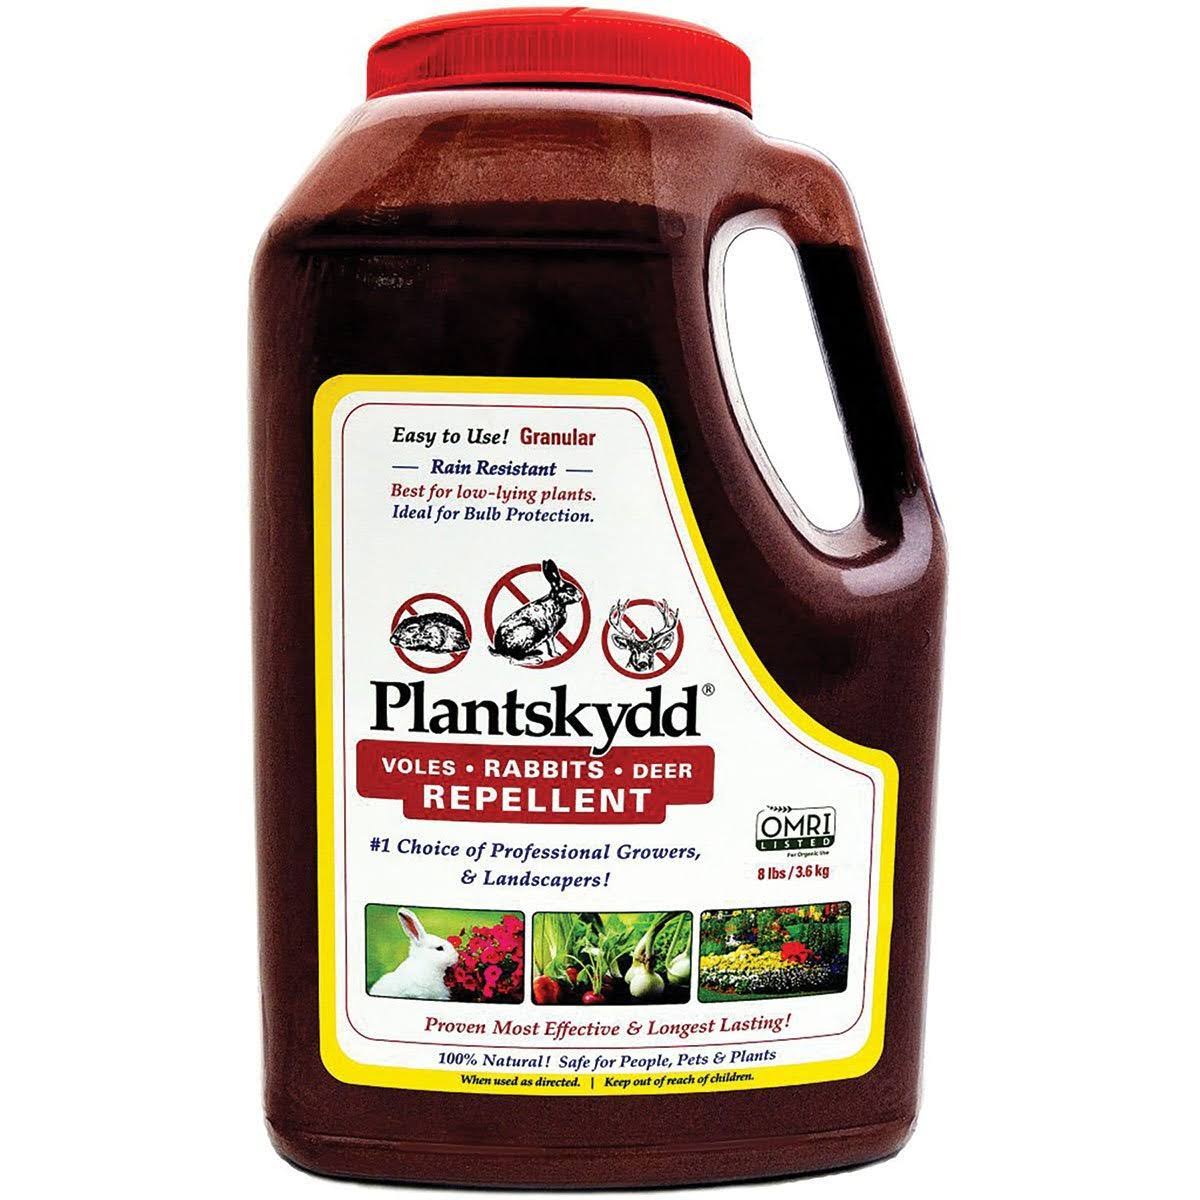 Plantskydd 8-lb Granular Deer & Rabbit Repellent in Shaker Jug